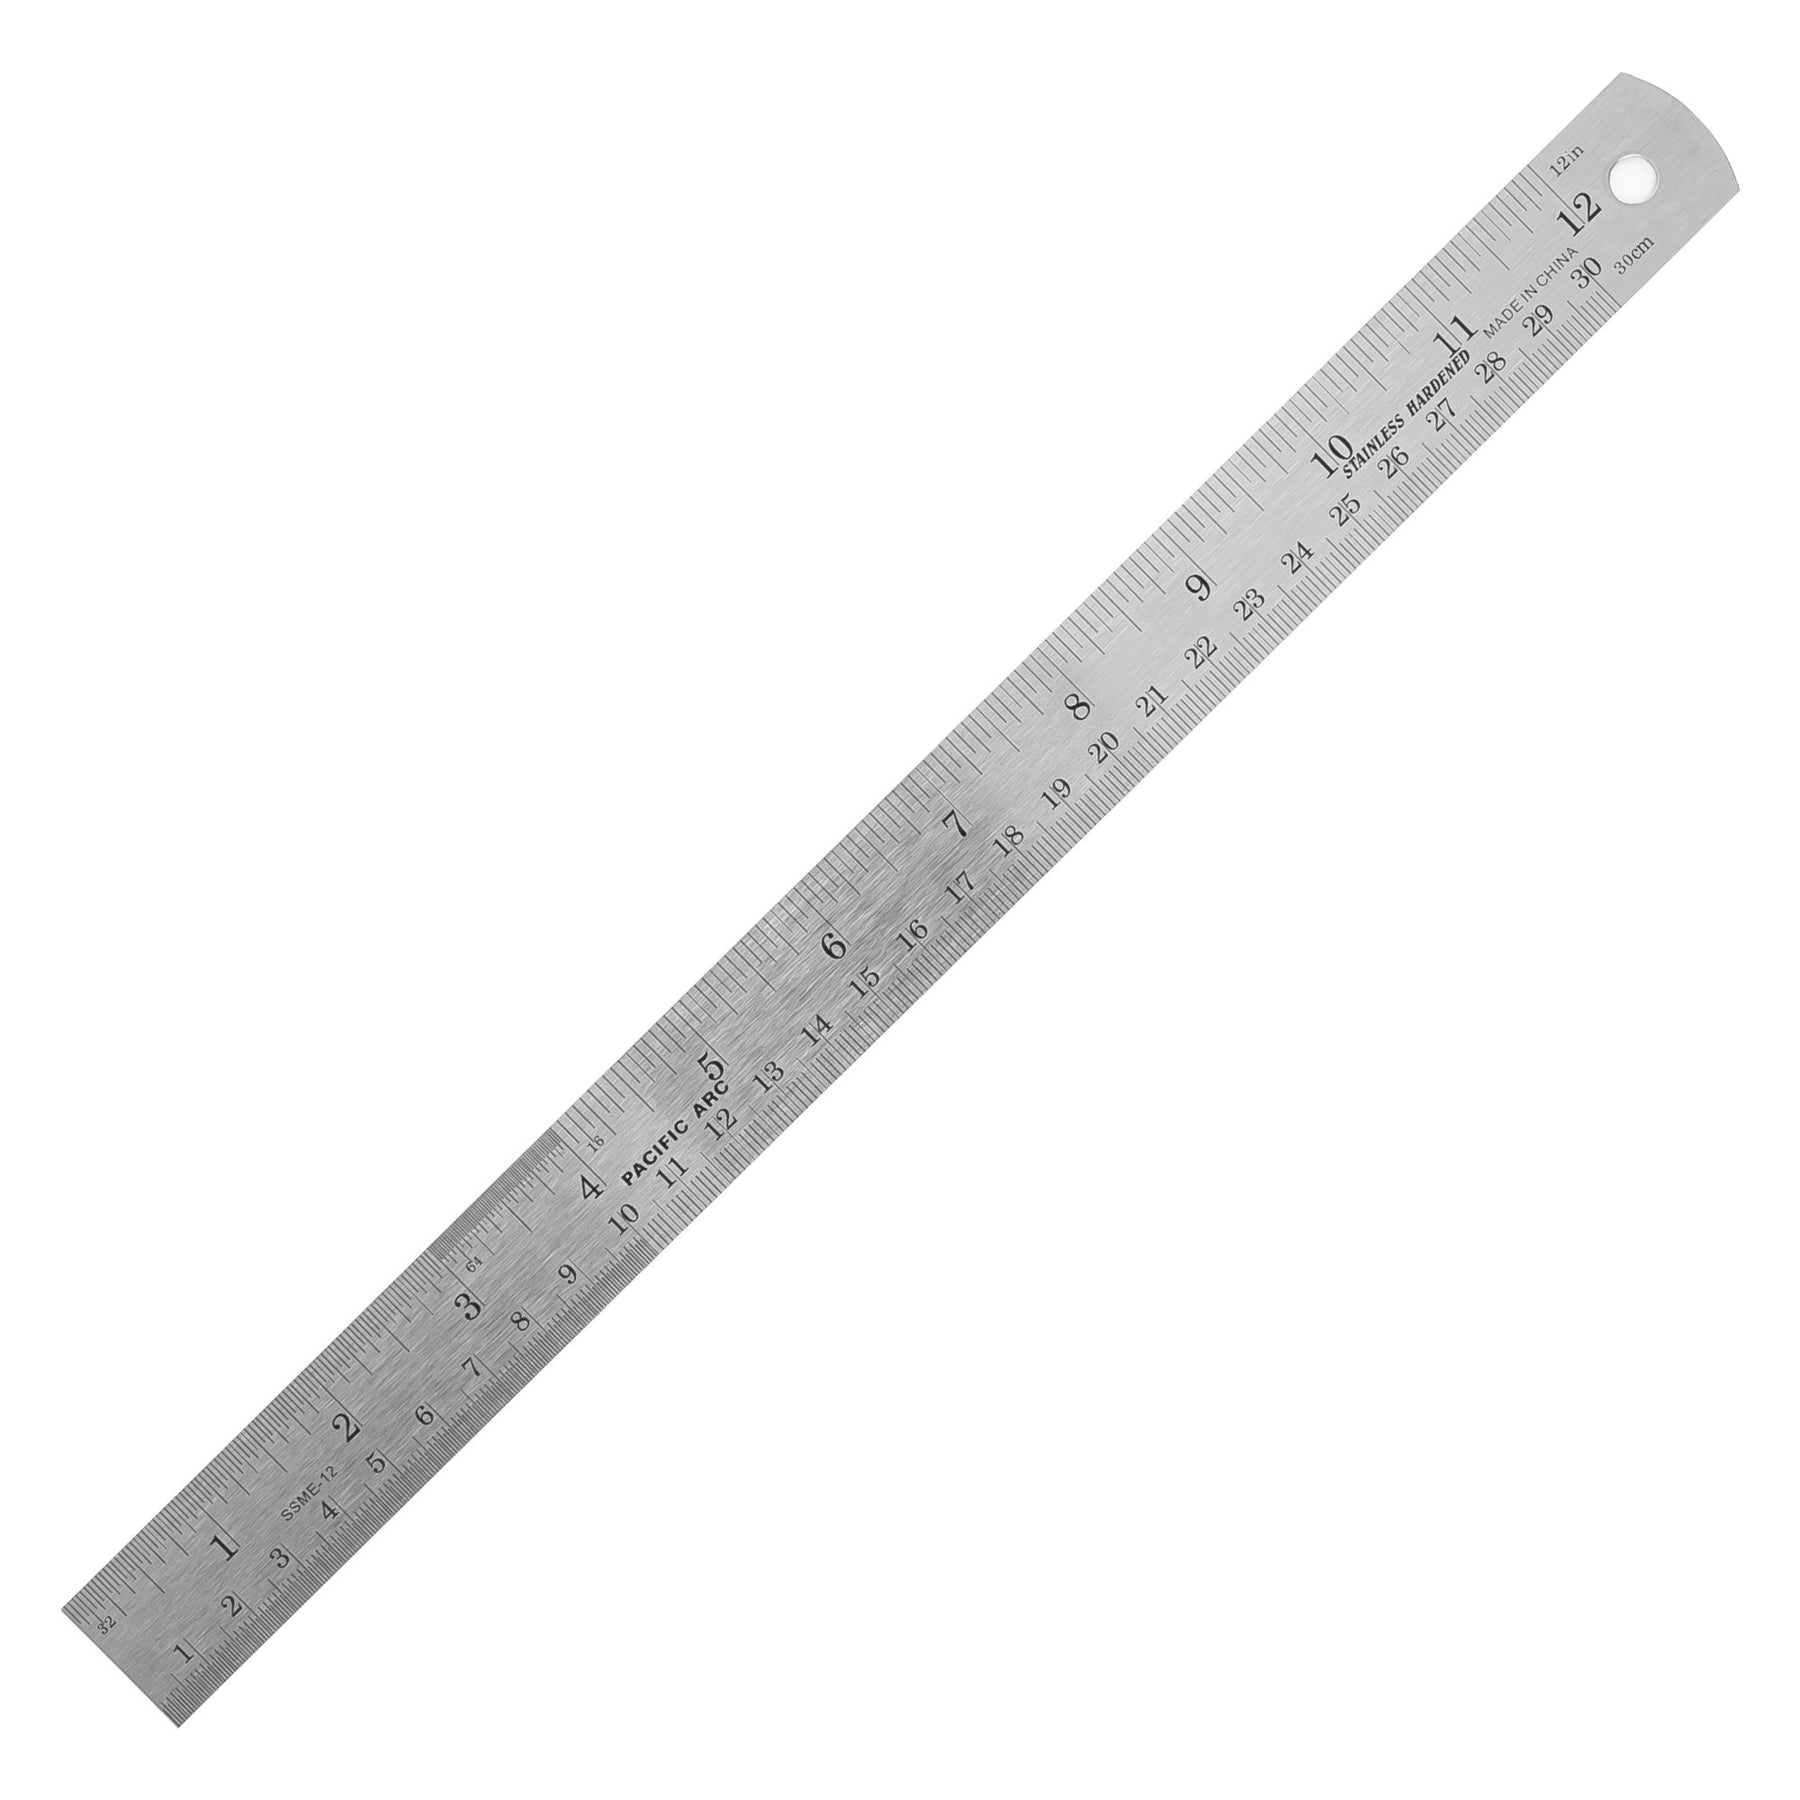 Buy Wholesale China Steel Rulers 6 8 12 14 Inch Metal Rulers Pack